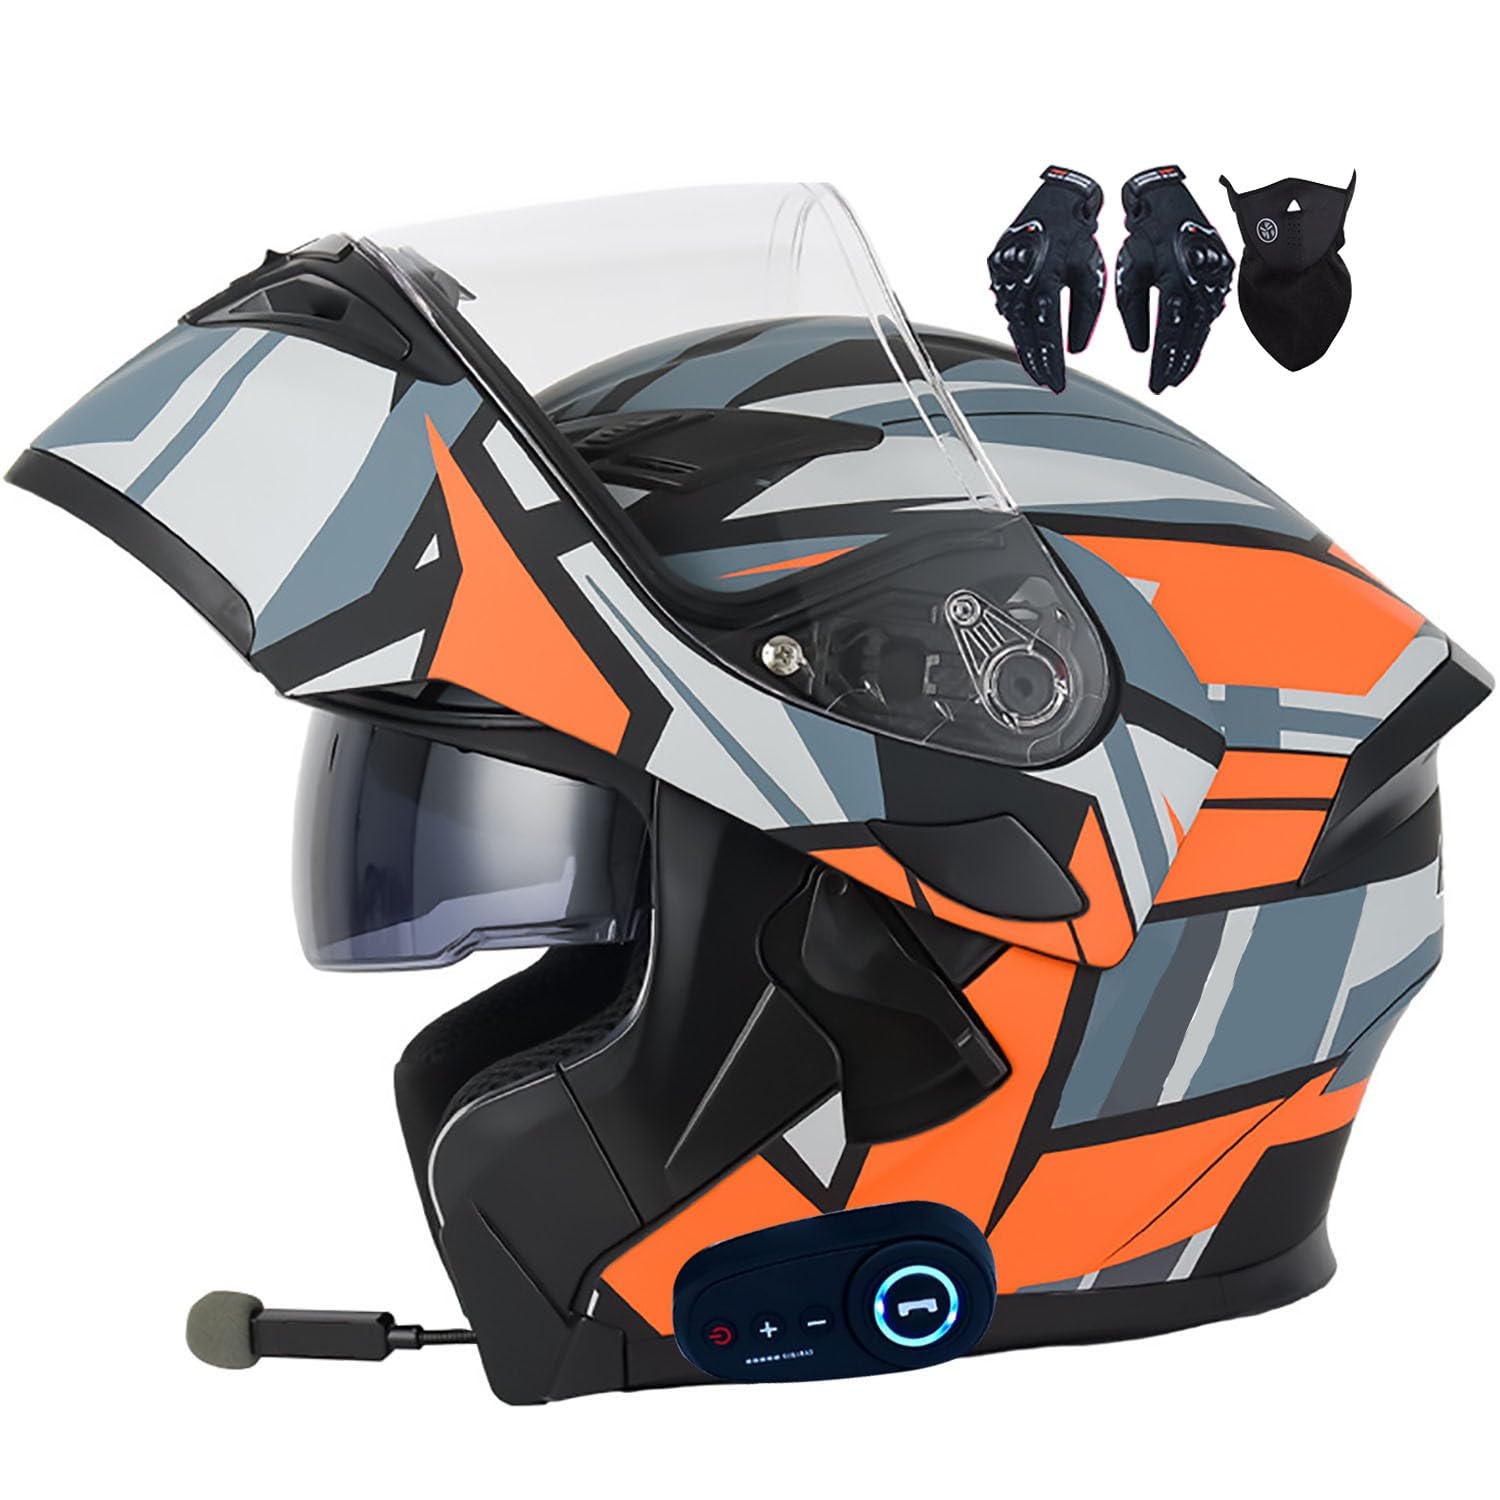 Integralhelm Klapphelm Motorrad mit bluetooth integriert ECE Zertifiziert Modularer Helm Doppelvisier Moped Street Racing Helm für Erwachsene Männer Frauen Roller Helm von Byroads